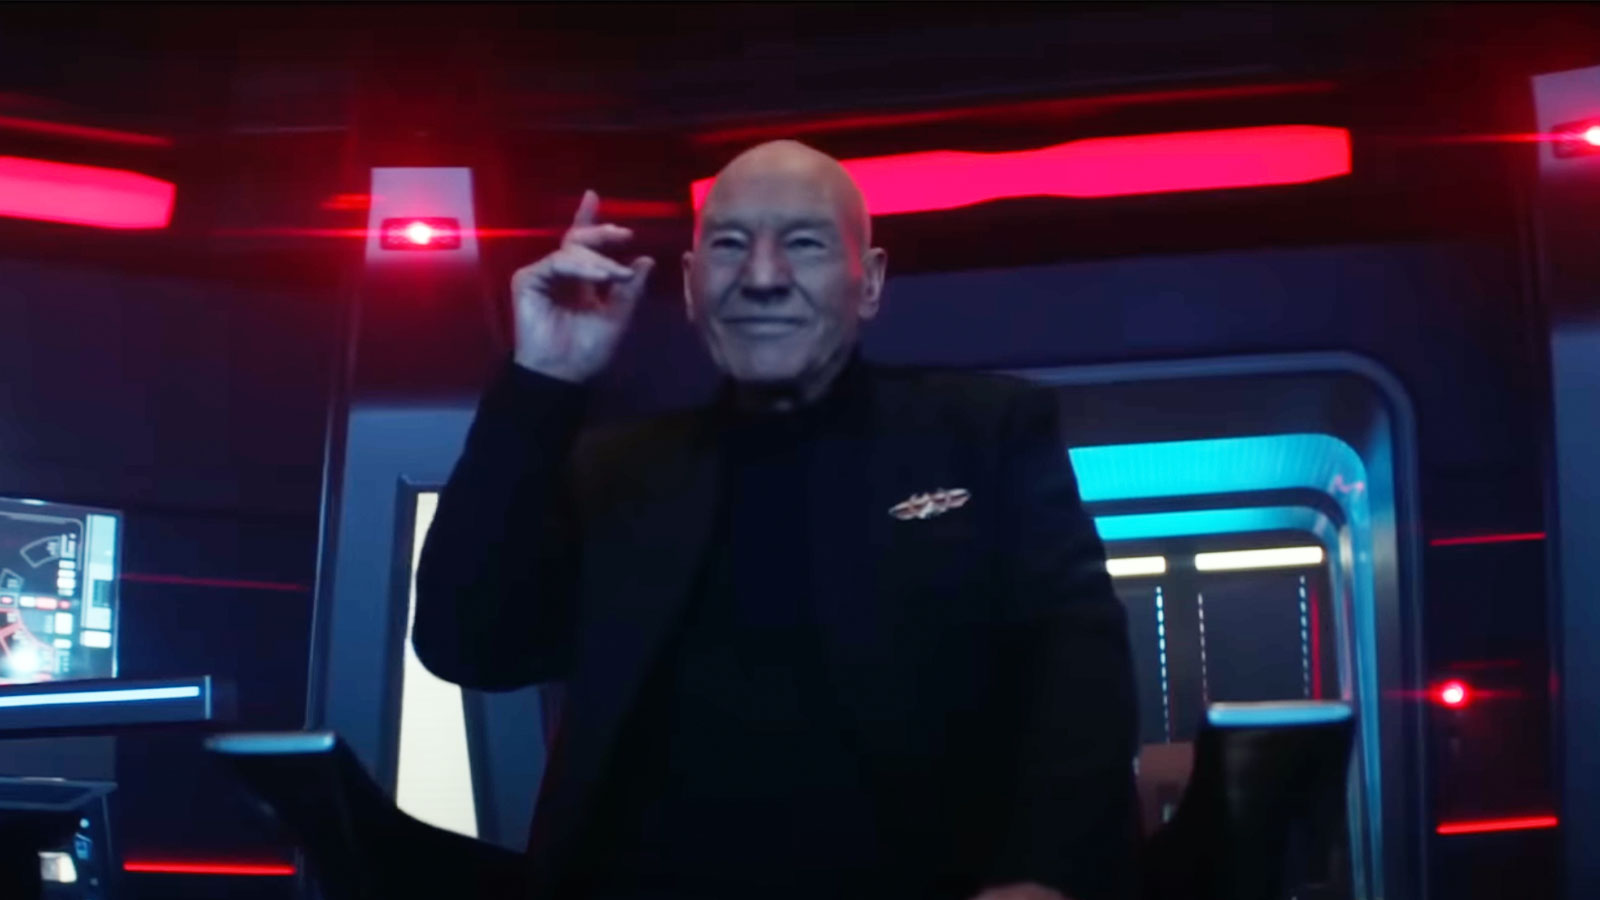 Final Star Trek: Picard Season 3 Trailer: “This is the end, my friend”